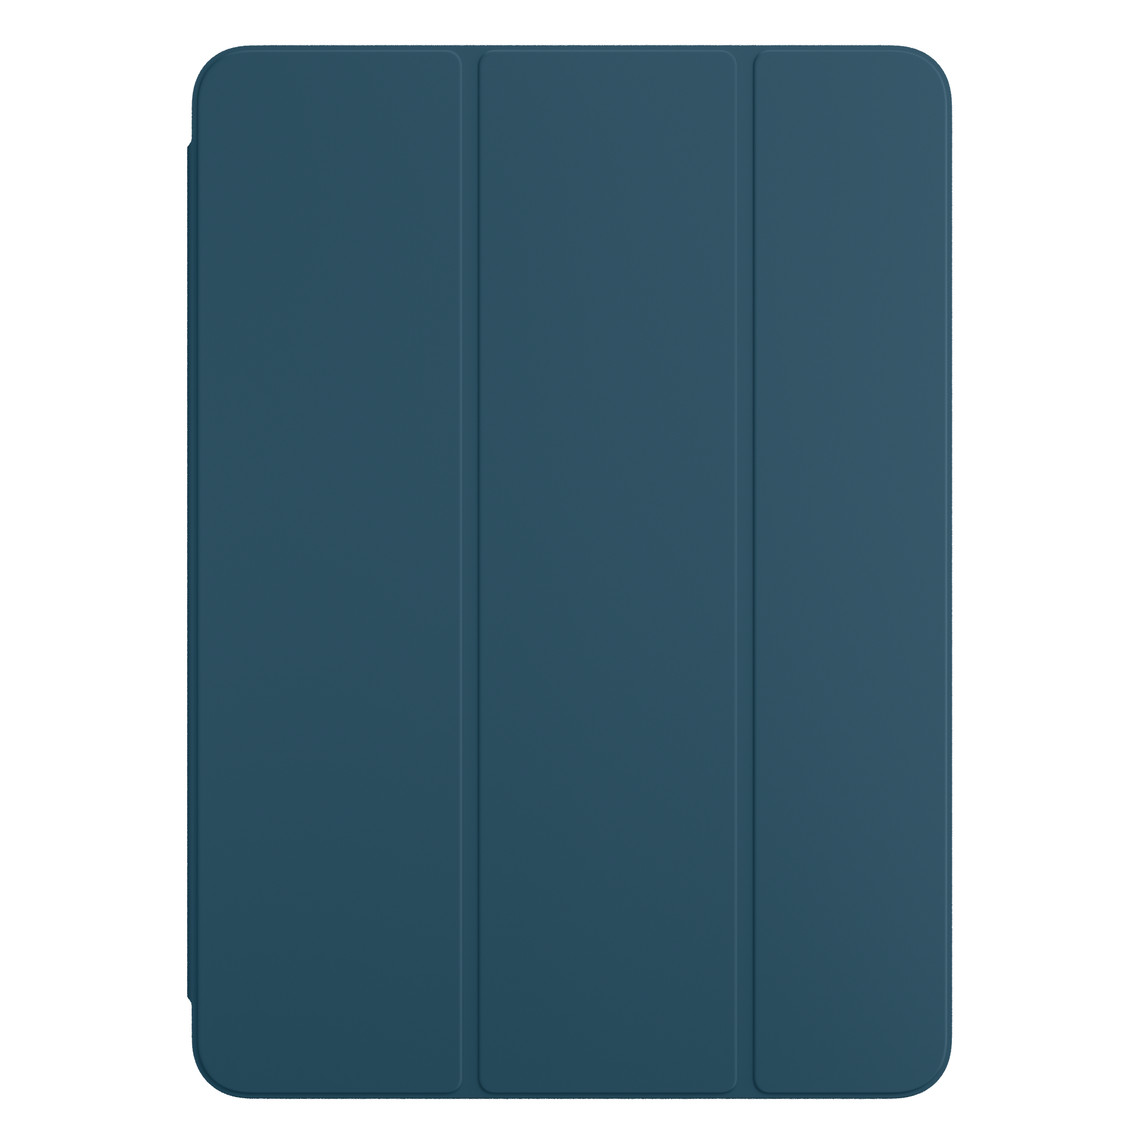 Smart Folio till iPad Pro i oceanblått sedd framifrån.